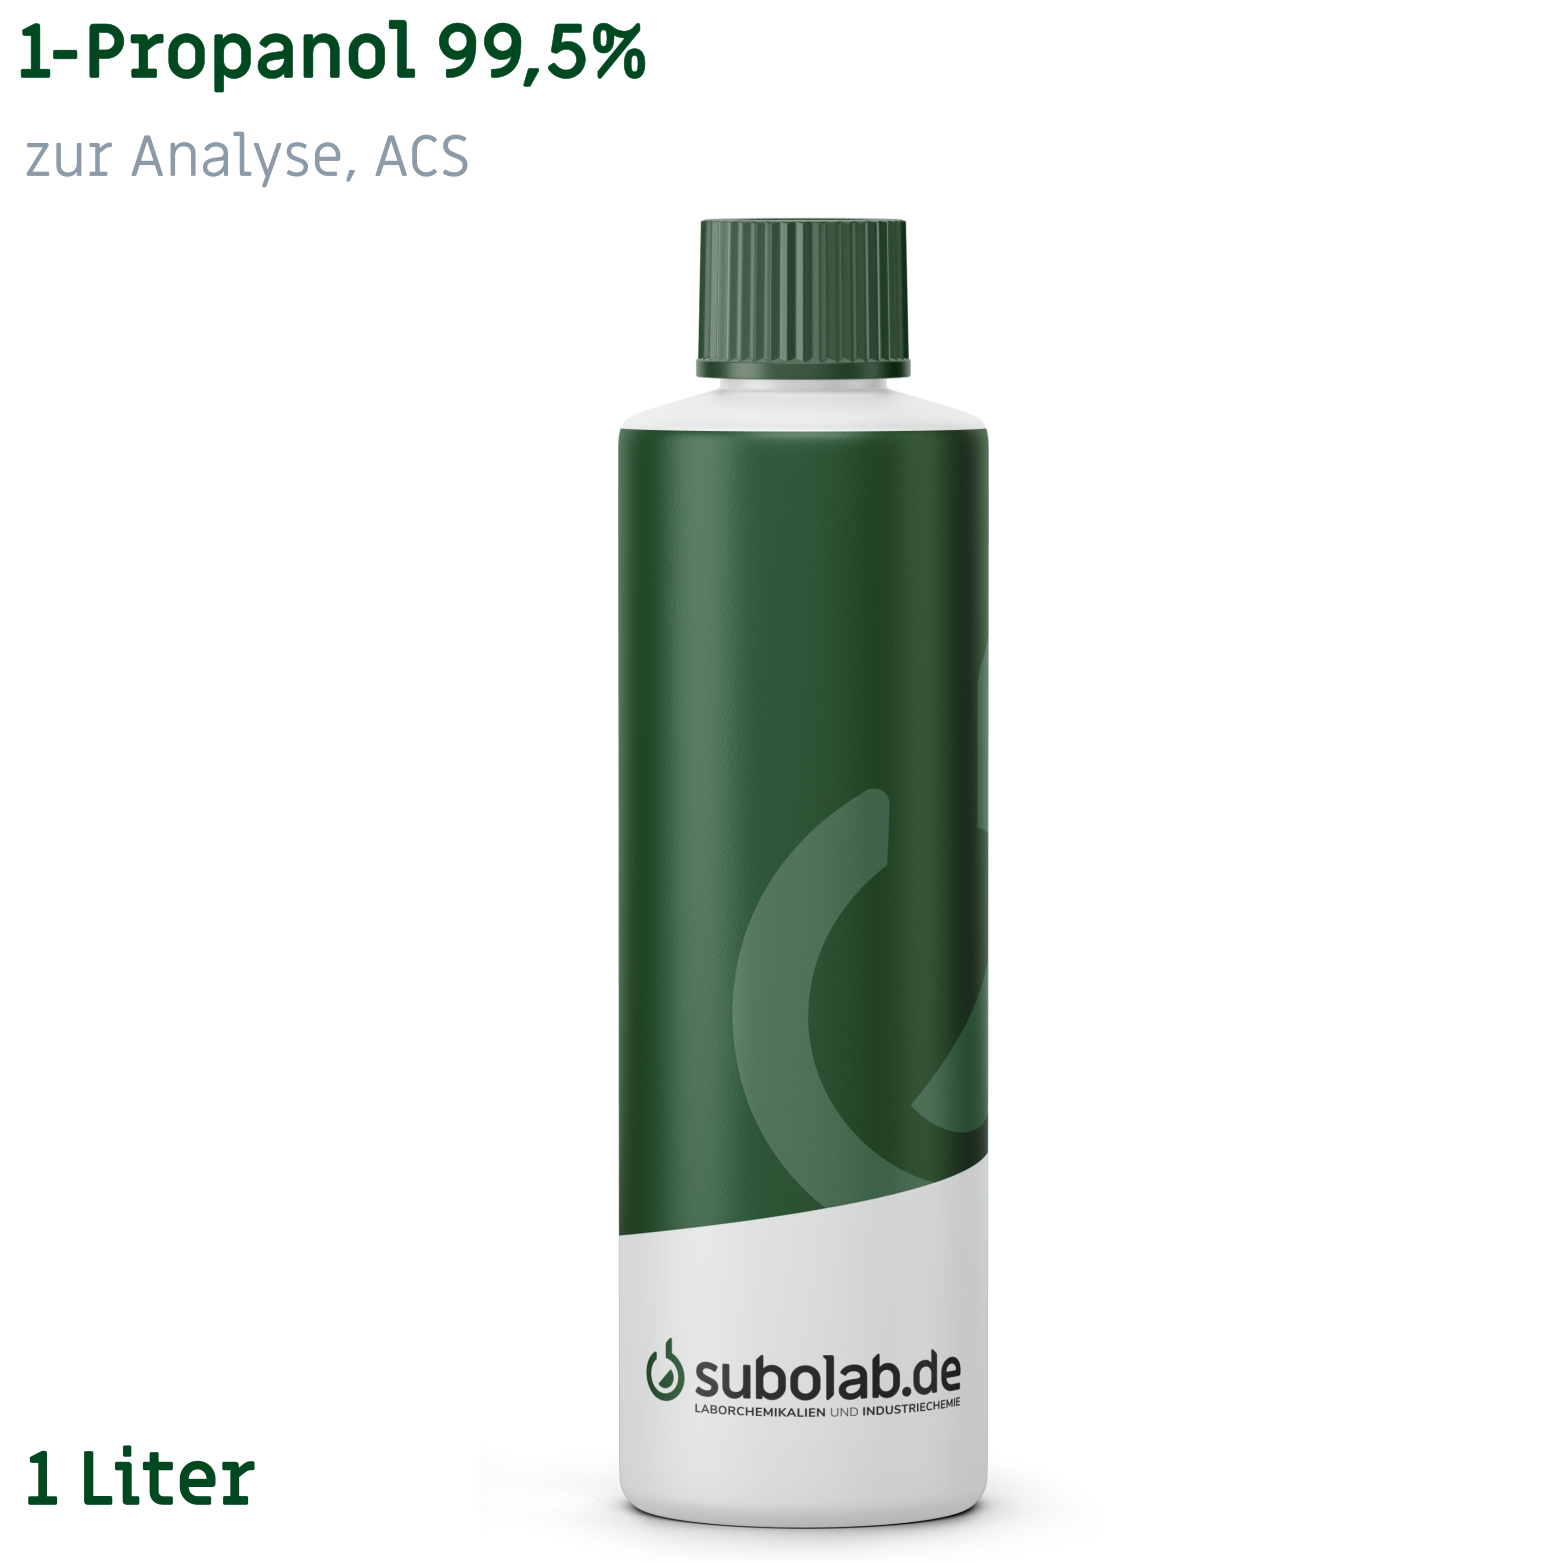 Bild von 1-Propanol 99,5% zur Analyse, ACS (1 Liter)